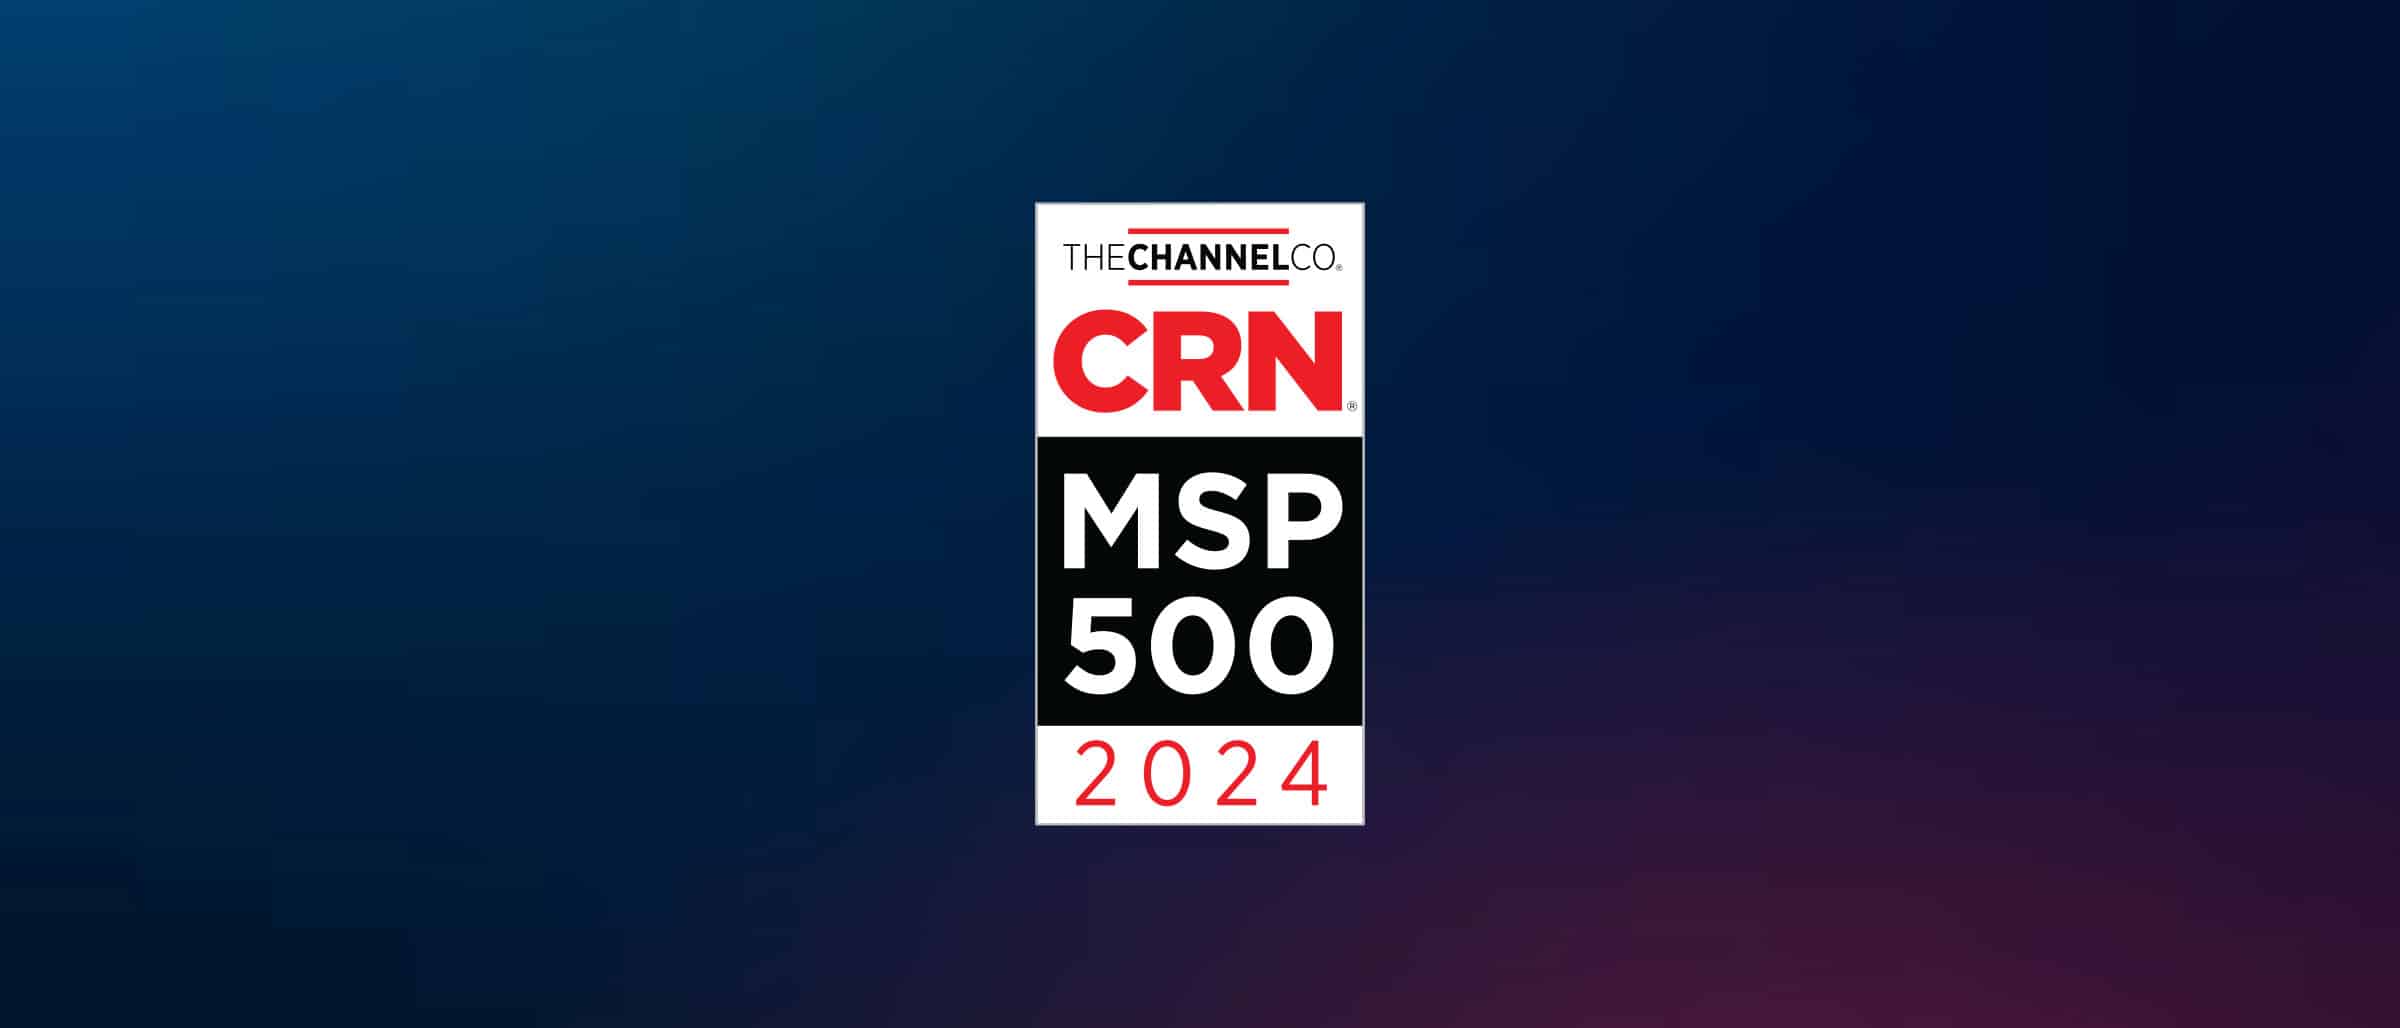 CRN MSP 2024 Award